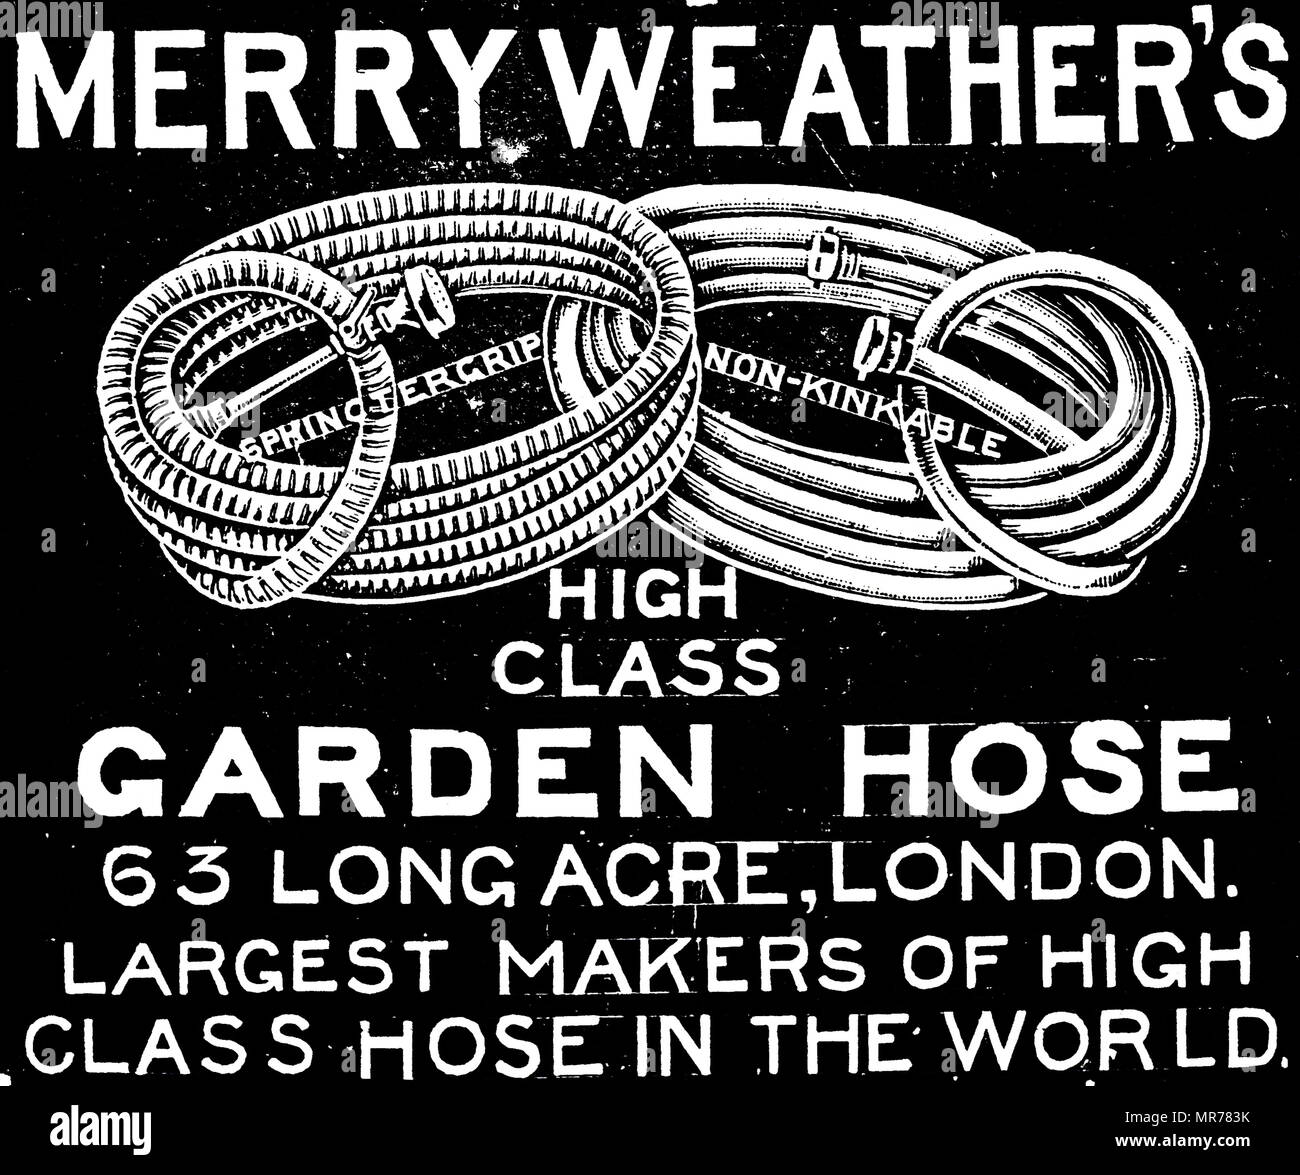 Werbung für merryweather der Gartenschlauch. Vom 20. Jahrhundert  Stockfotografie - Alamy